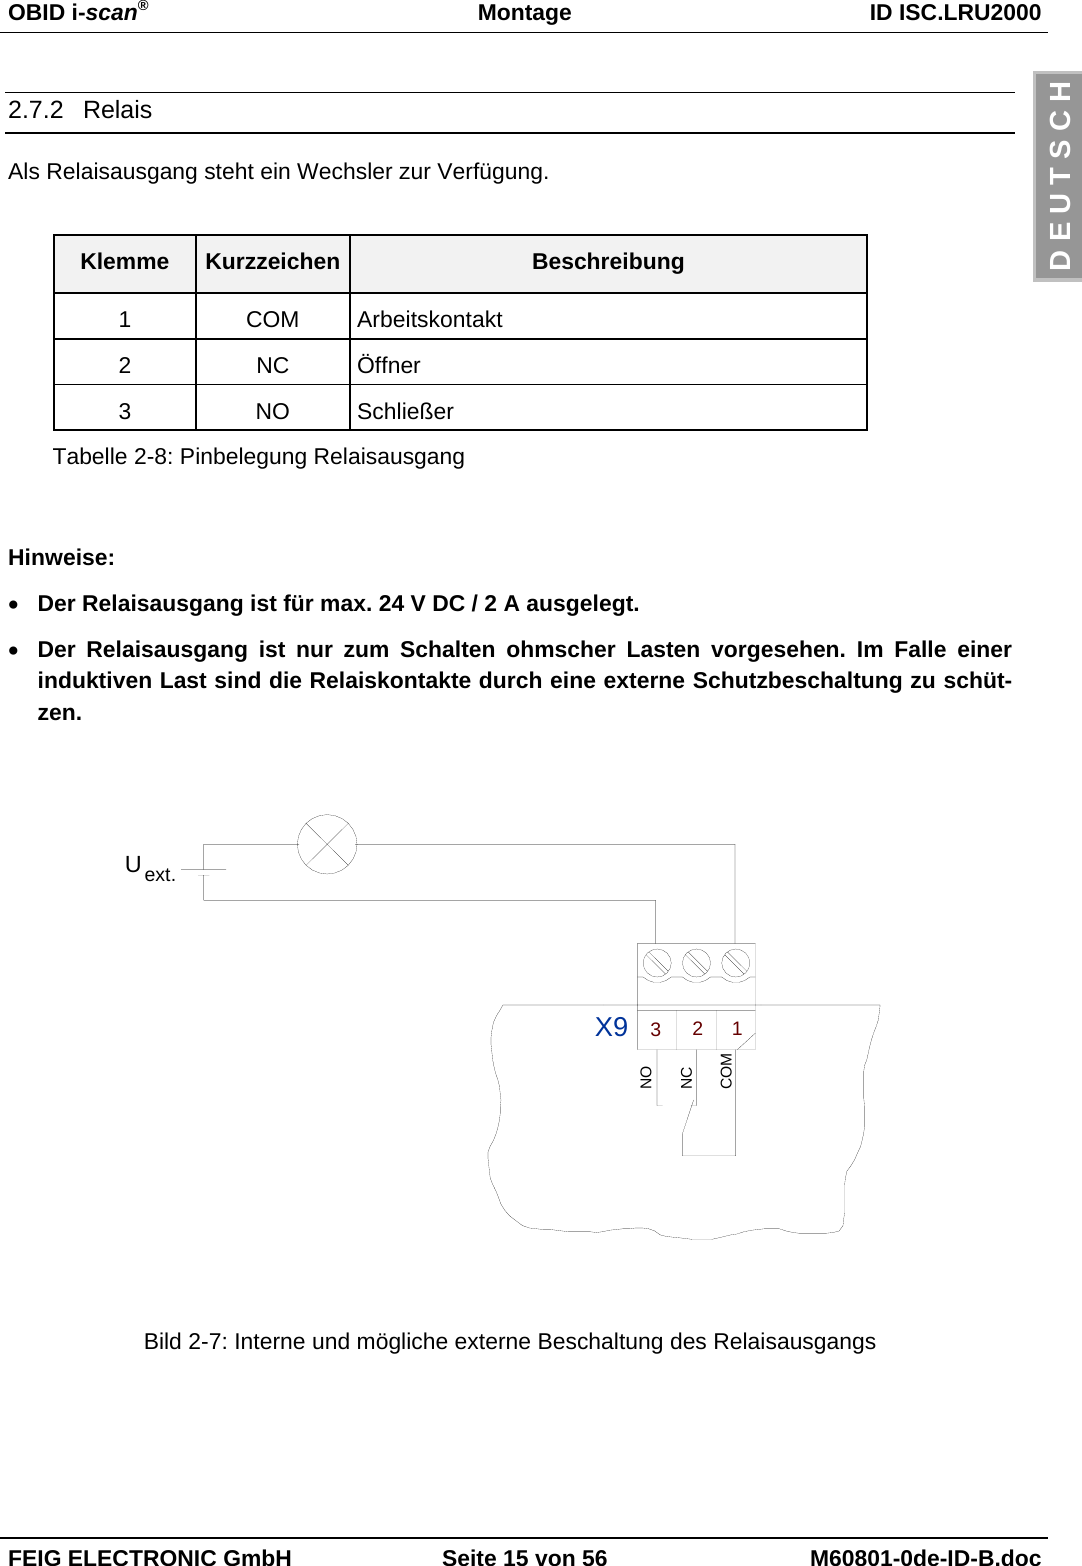 OBID i-scan®Montage ID ISC.LRU2000FEIG ELECTRONIC GmbH Seite 15 von 56 M60801-0de-ID-B.docD E U T S C H2.7.2 RelaisAls Relaisausgang steht ein Wechsler zur Verfügung.Klemme Kurzzeichen Beschreibung1 COM Arbeitskontakt2 NC Öffner3 NO SchließerTabelle 2-8: Pinbelegung RelaisausgangHinweise:• Der Relaisausgang ist für max. 24 V DC / 2 A ausgelegt.• Der Relaisausgang ist nur zum Schalten ohmscher Lasten vorgesehen. Im Falle einerinduktiven Last sind die Relaiskontakte durch eine externe Schutzbeschaltung zu schüt-zen.ext.U123X9COMNONCBild 2-7: Interne und mögliche externe Beschaltung des Relaisausgangs